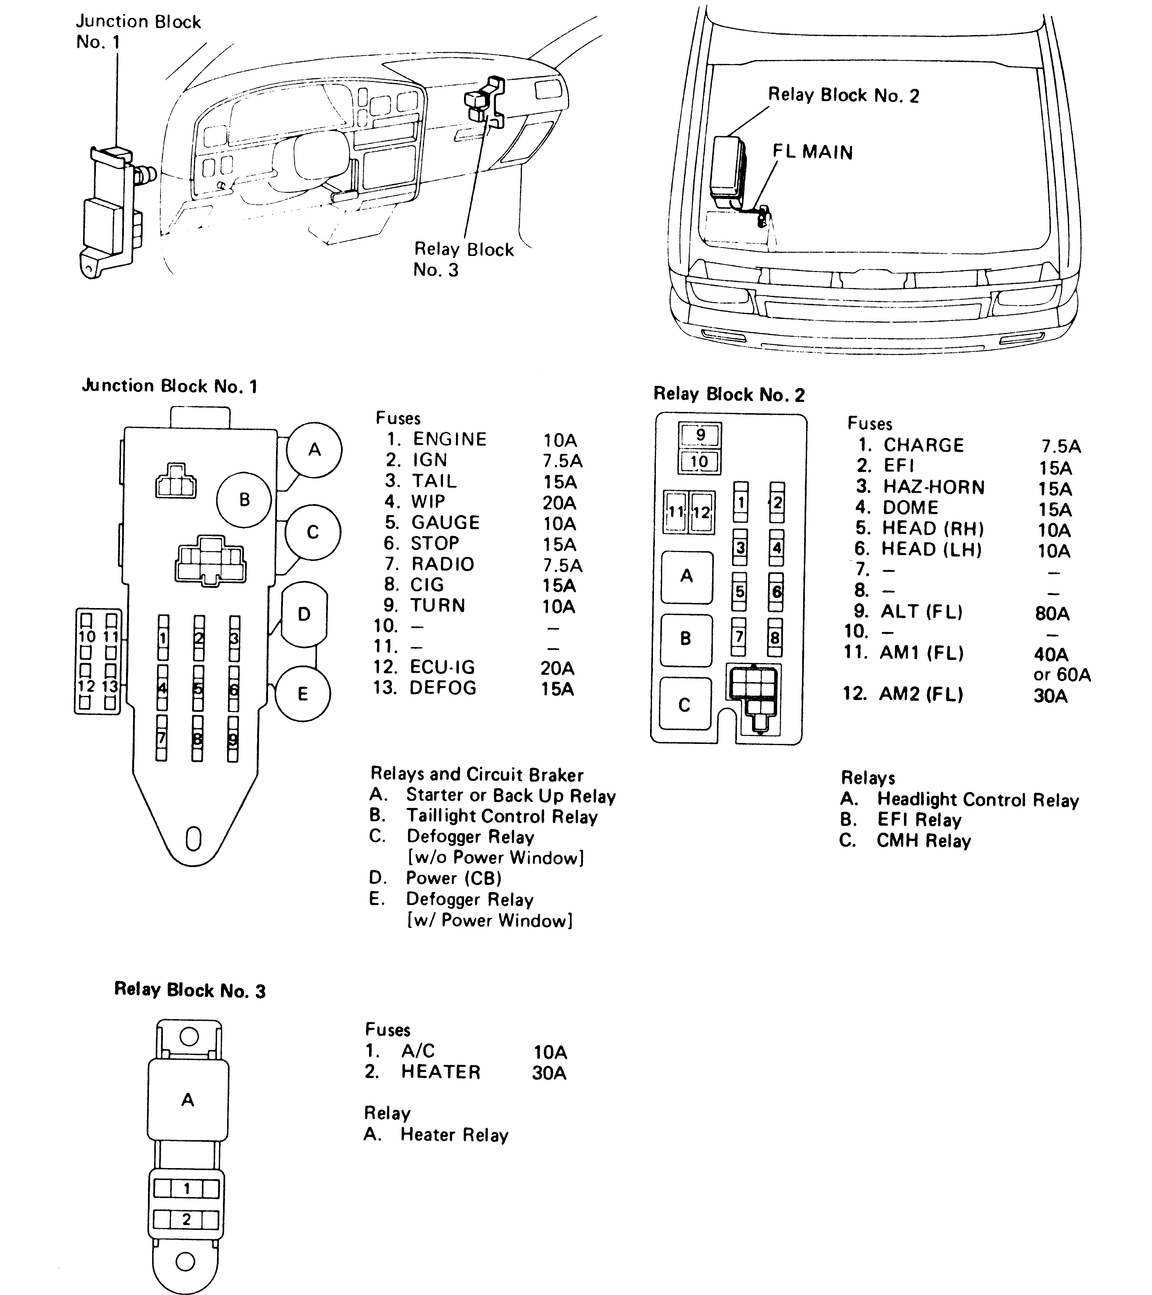 [DIAGRAM] 1983 Toyota Pickup Fuse Diagram FULL Version HD ...